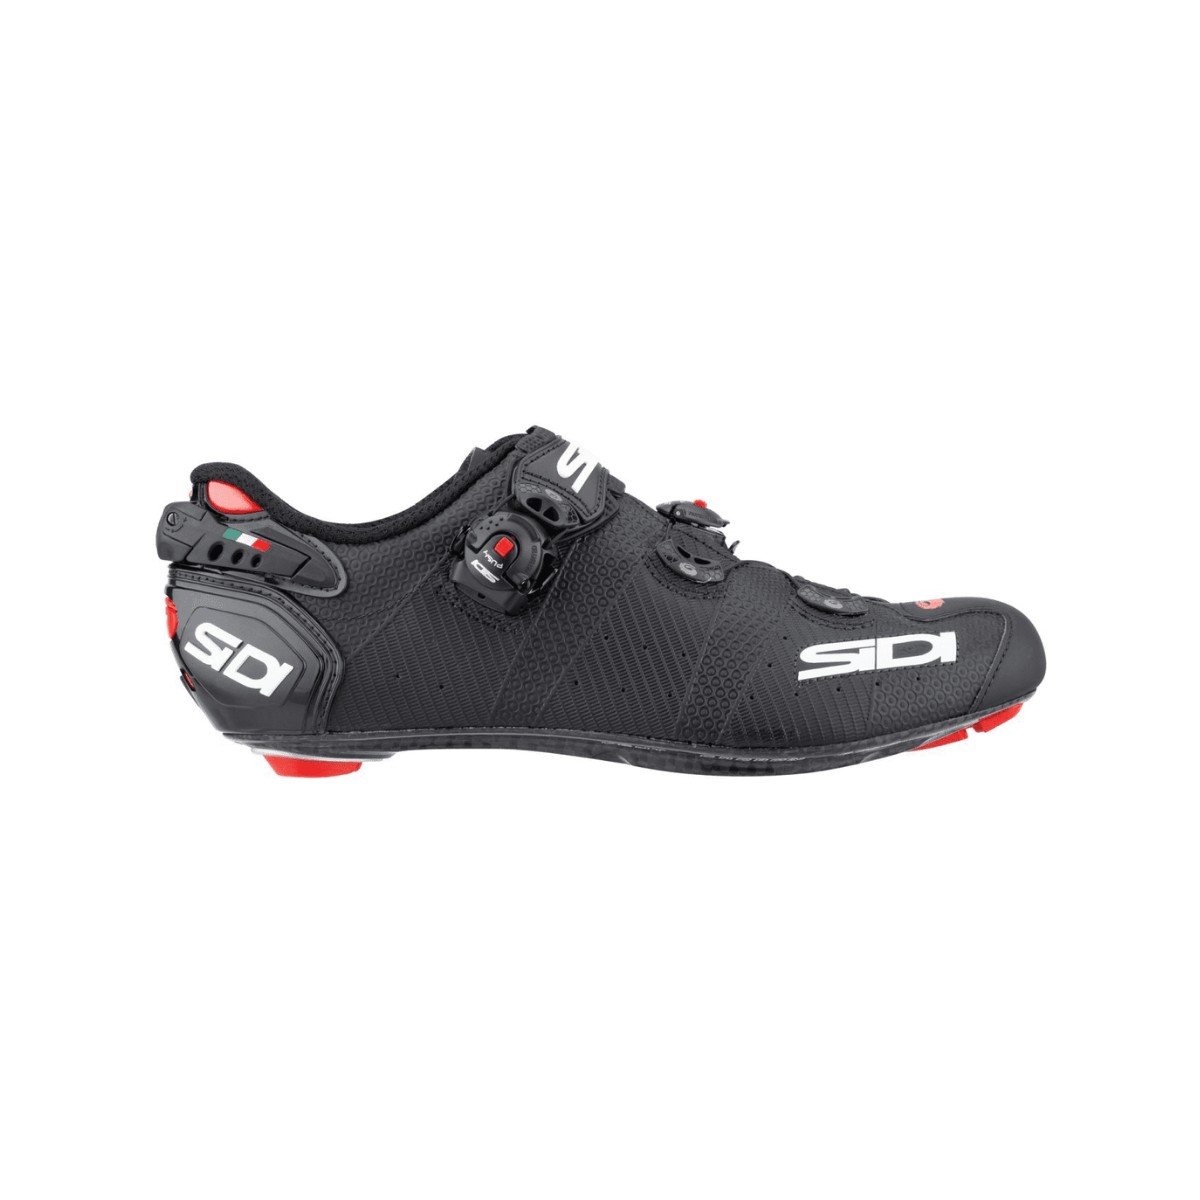 Sidi Wire 2 Carbon Cycling Shoes Matte Black, Size 43 - EUR